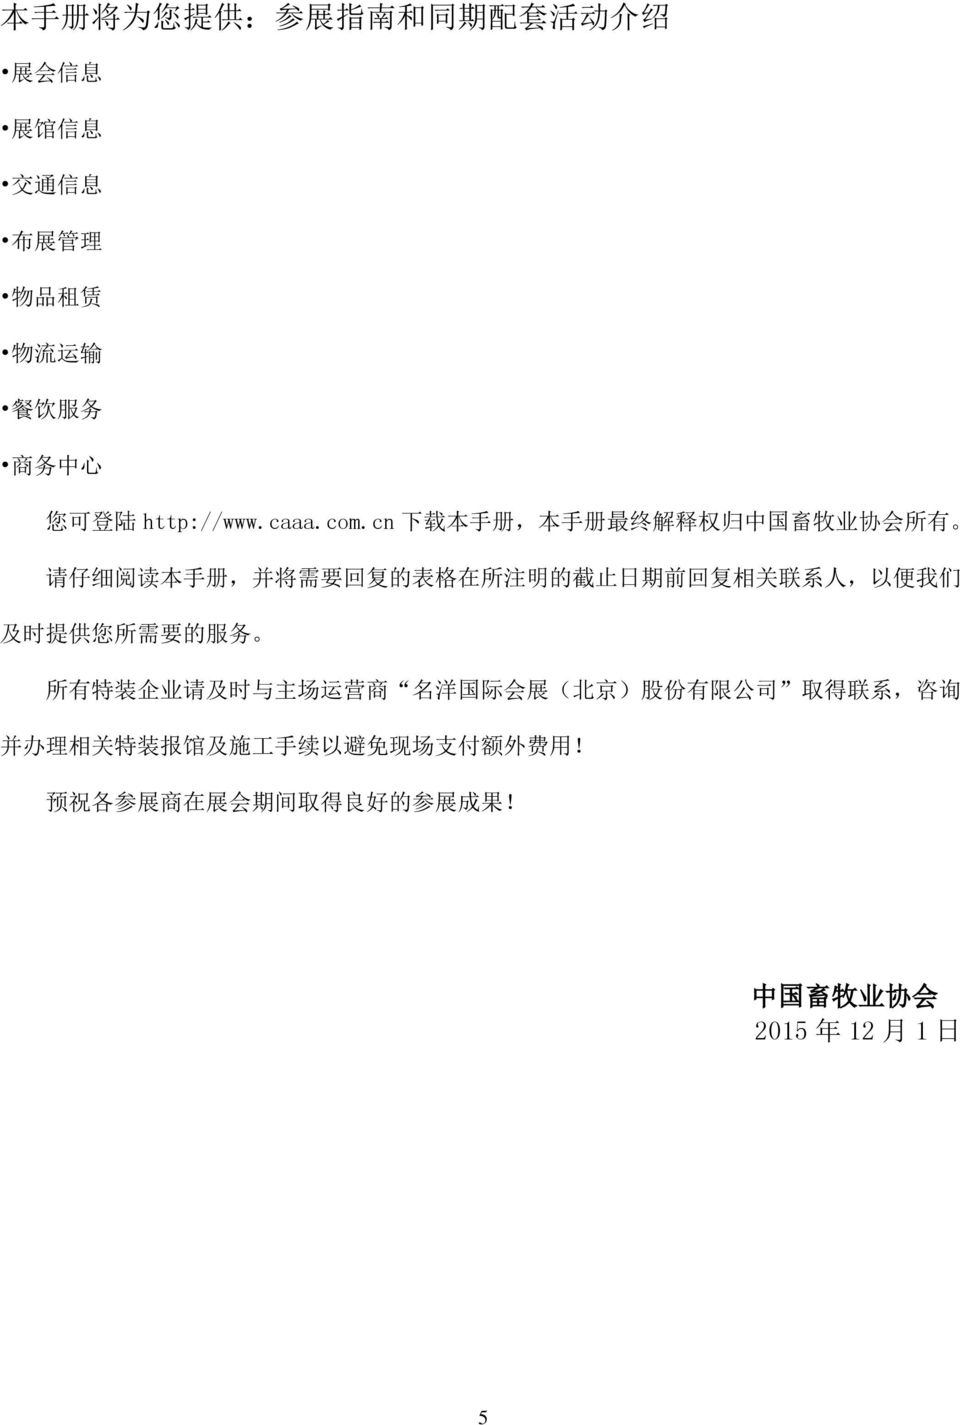 cn 下 载 本 手 册, 本 手 册 最 终 解 释 权 归 中 国 畜 牧 业 协 会 所 有 请 仔 细 阅 读 本 手 册, 并 将 需 要 回 复 的 表 格 在 所 注 明 的 截 止 日 期 前 回 复 相 关 联 系 人,